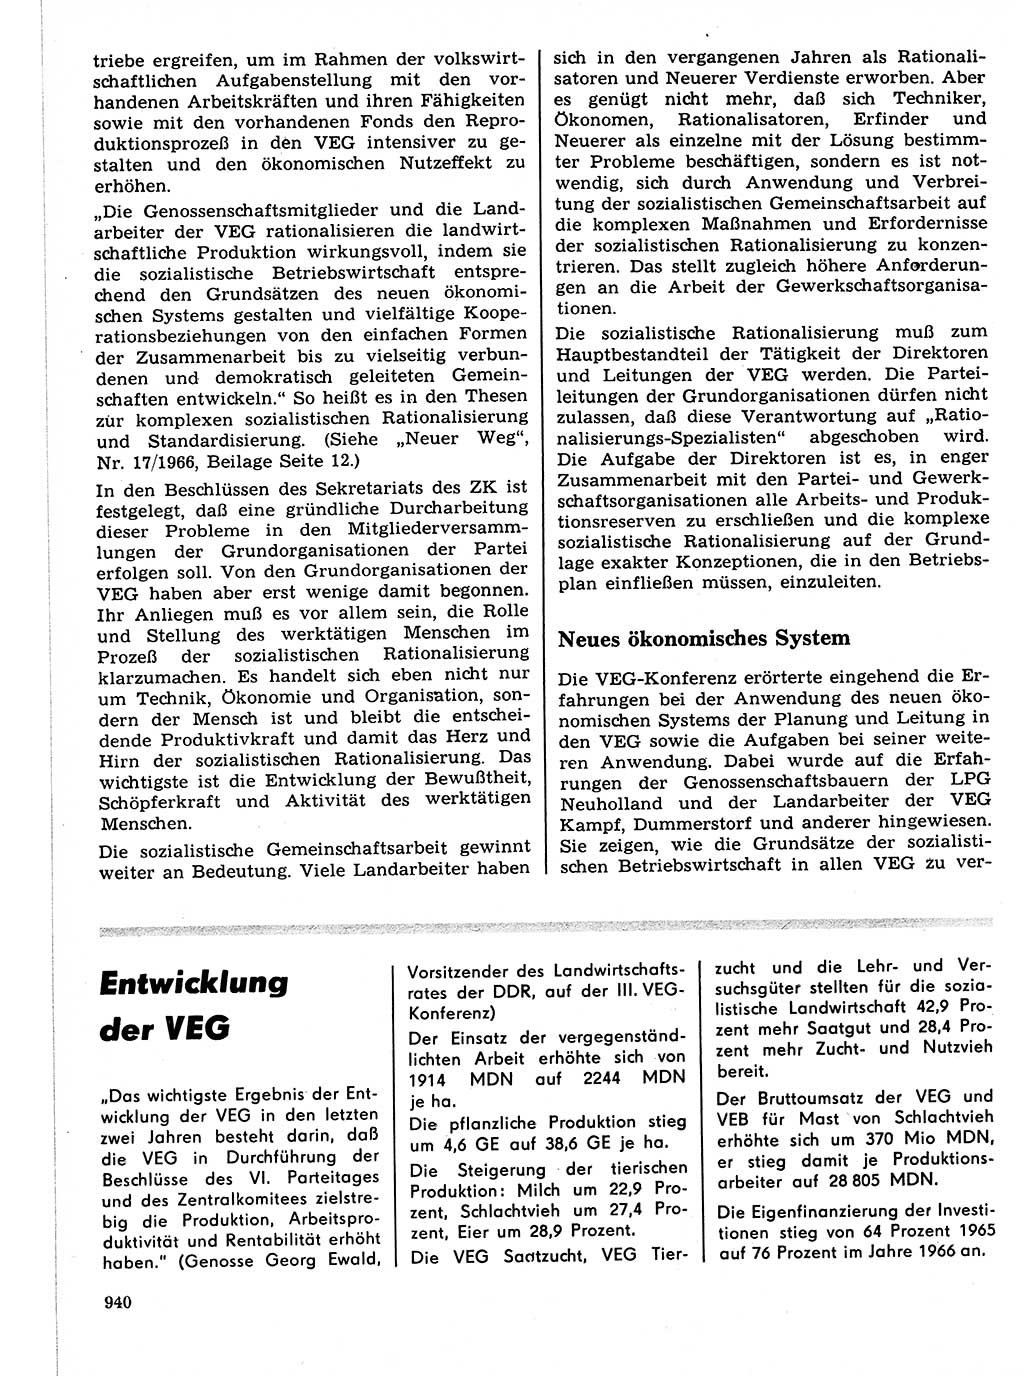 Neuer Weg (NW), Organ des Zentralkomitees (ZK) der SED (Sozialistische Einheitspartei Deutschlands) für Fragen des Parteilebens, 21. Jahrgang [Deutsche Demokratische Republik (DDR)] 1966, Seite 940 (NW ZK SED DDR 1966, S. 940)